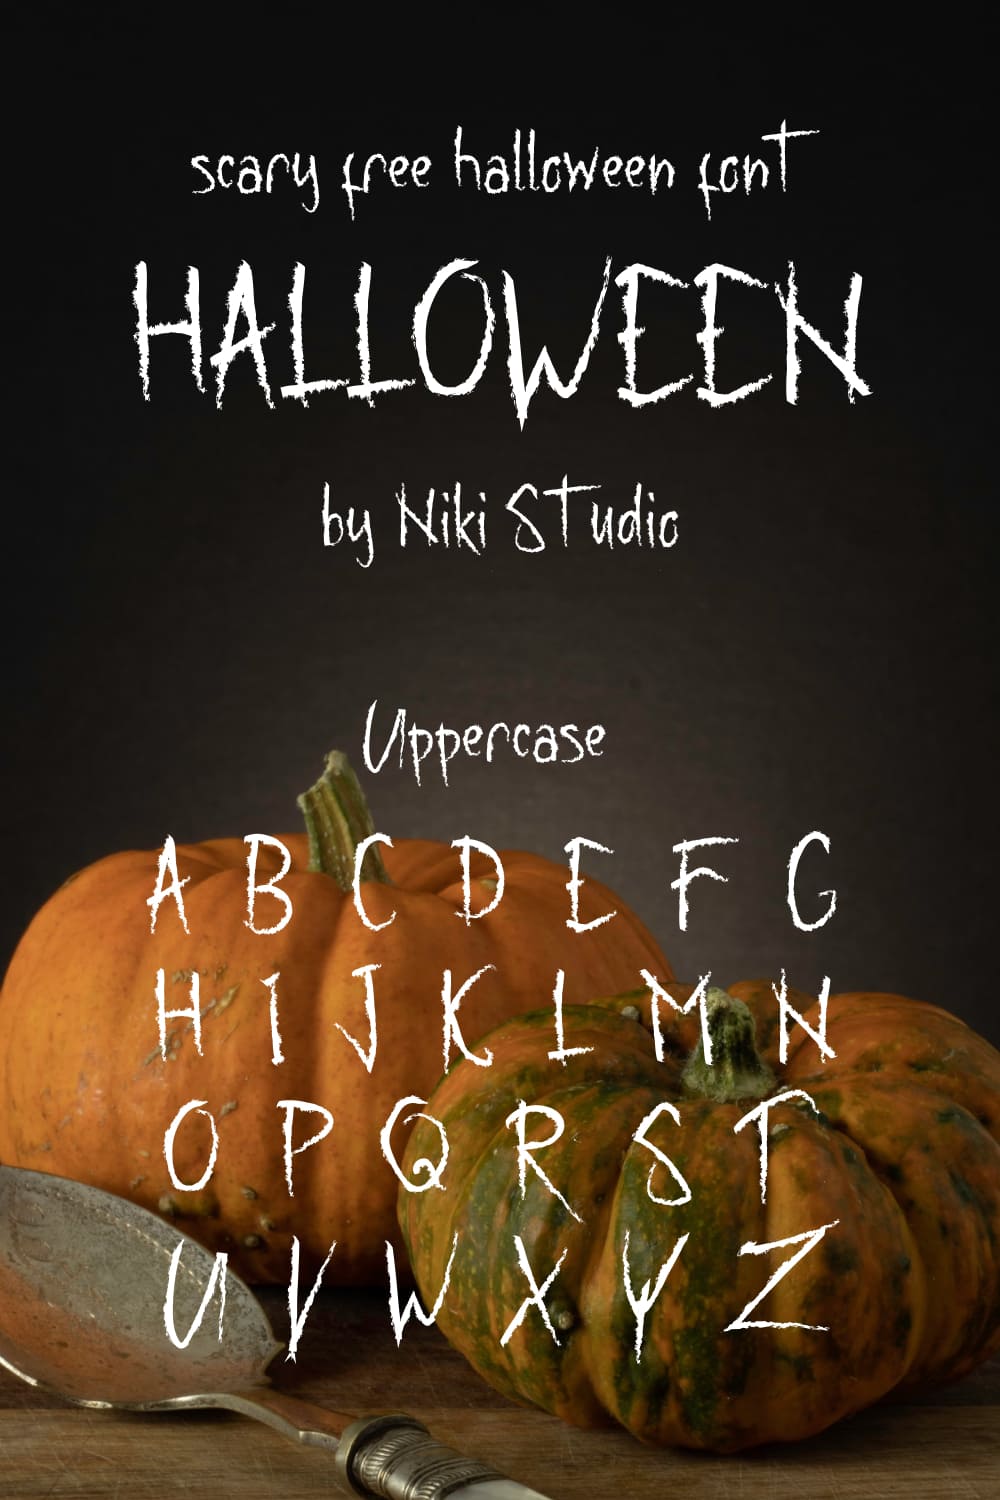 MasterBundles Pinterest Alphabet example for creepy free halloween font.